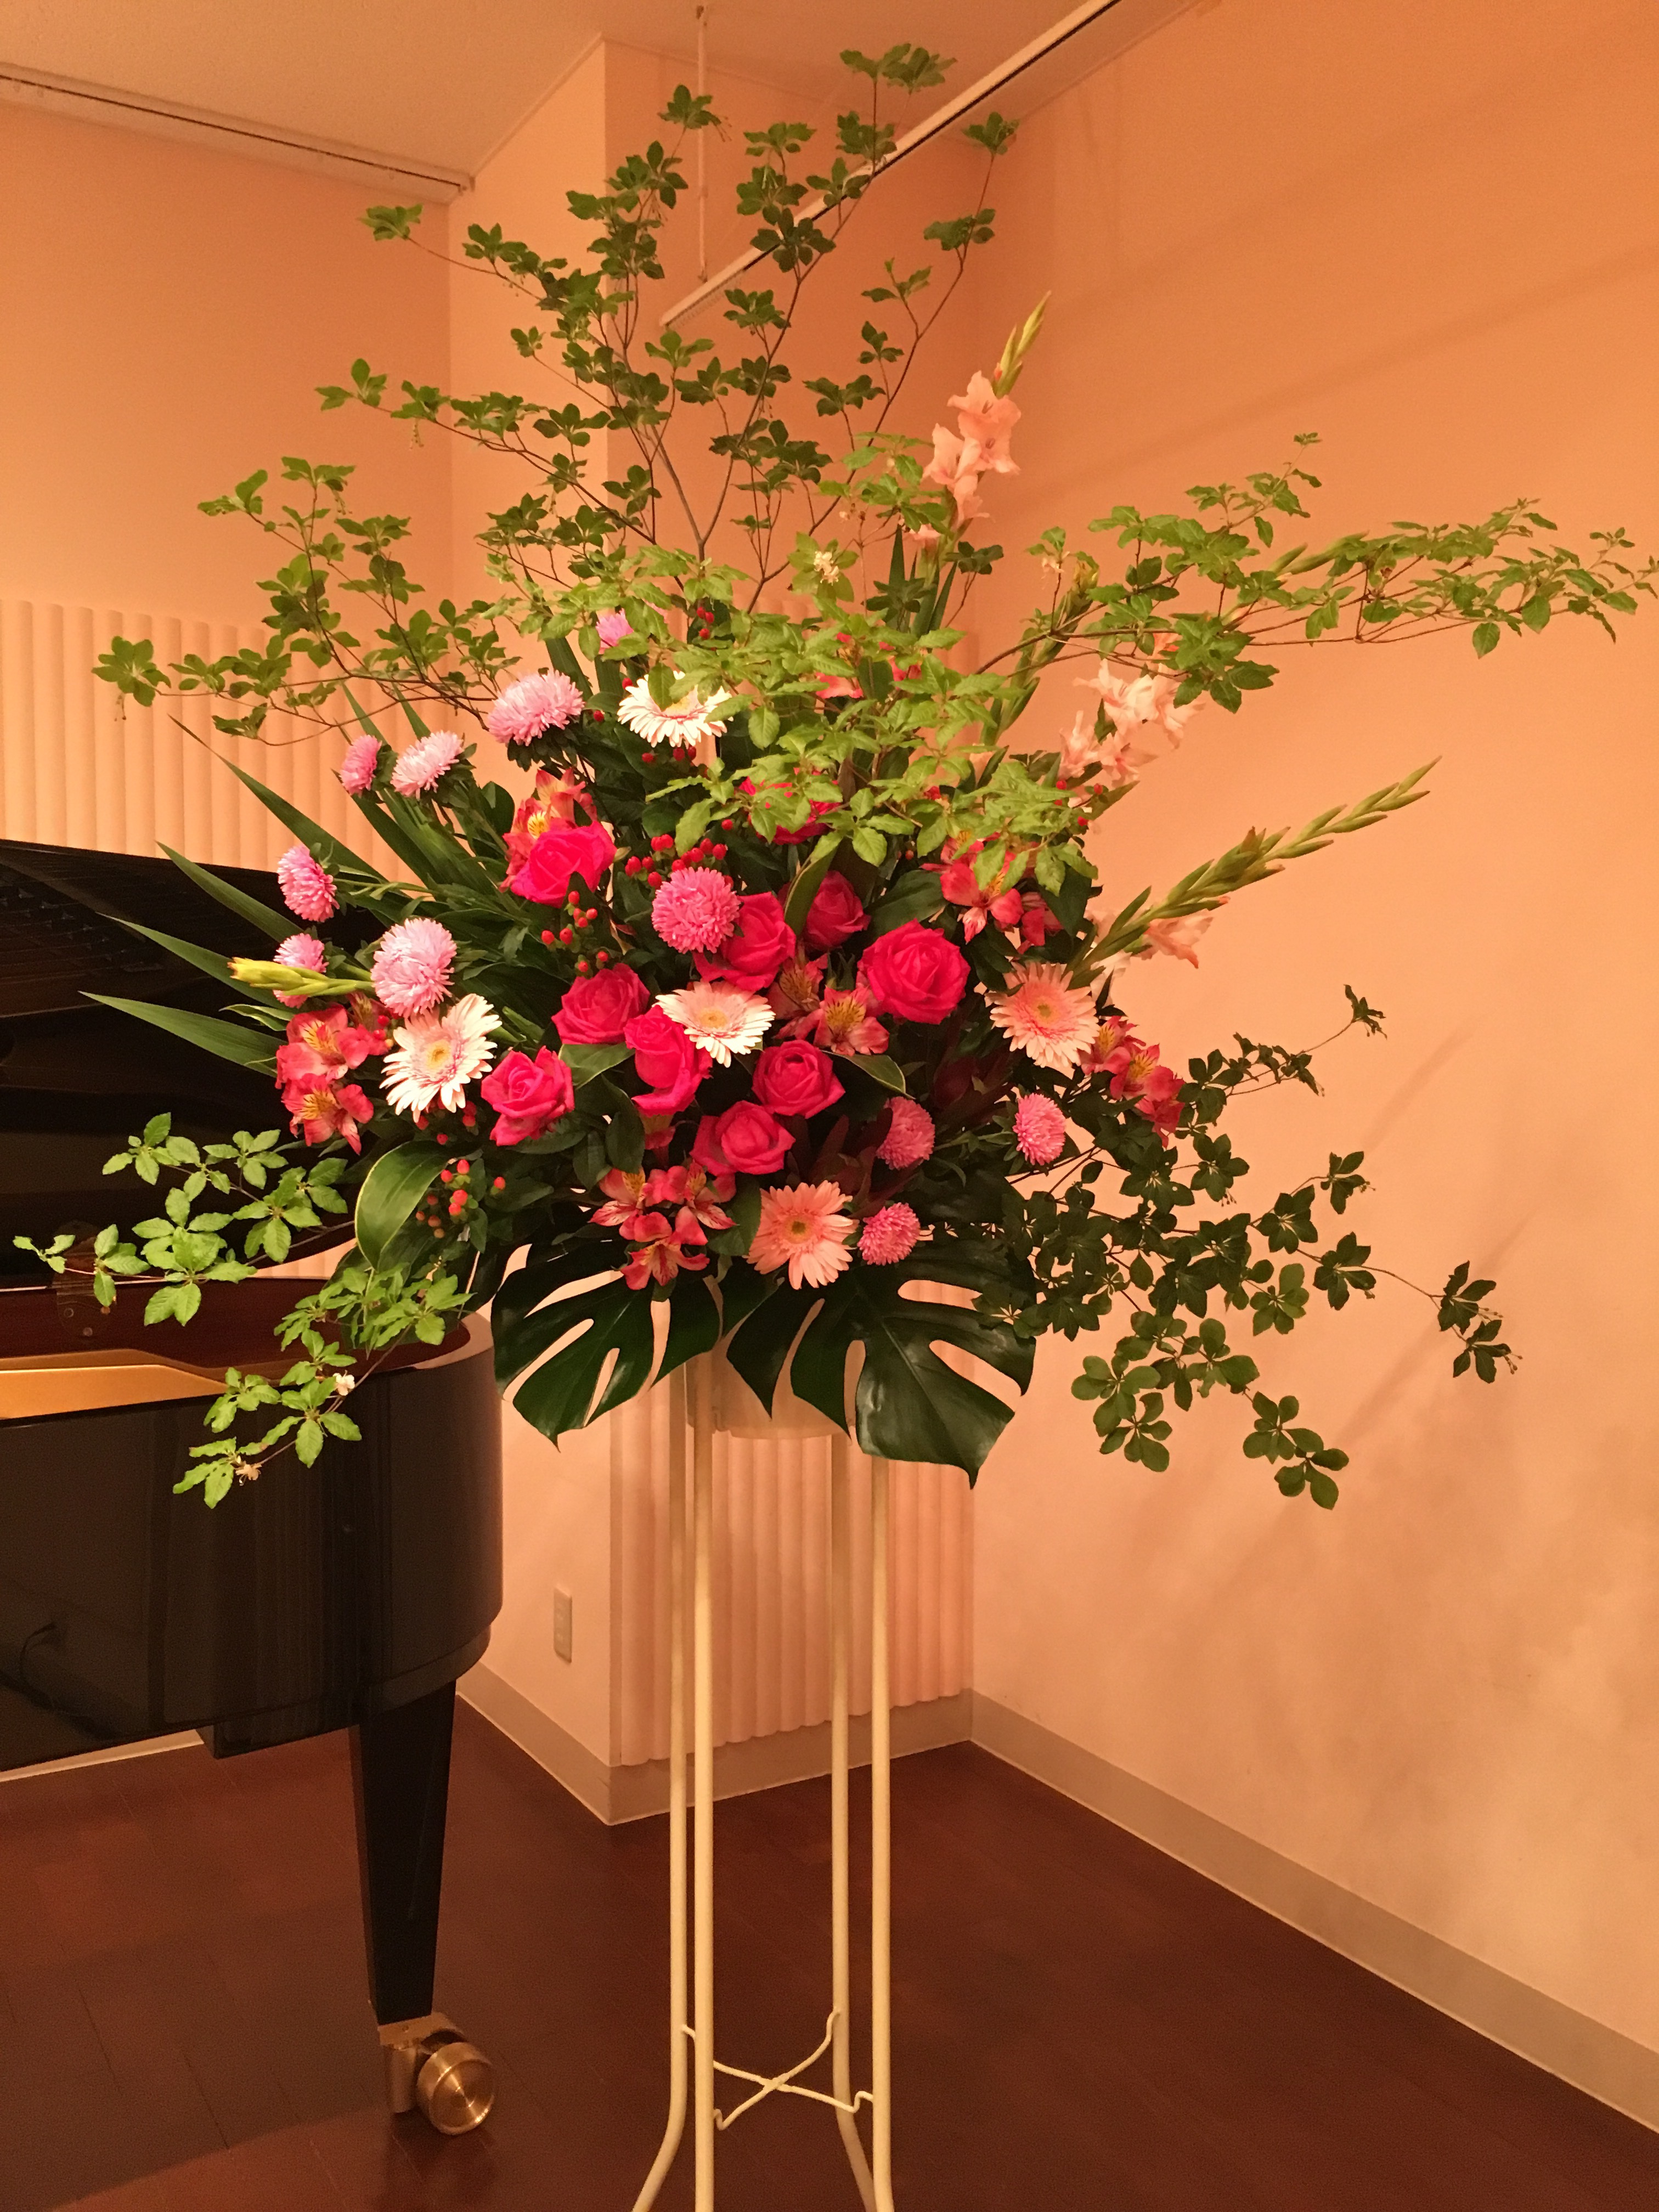 新橋へピアノ発表会へのスタンド花のお届け 銀座 阿佐ヶ谷の花屋 Avail アヴェール